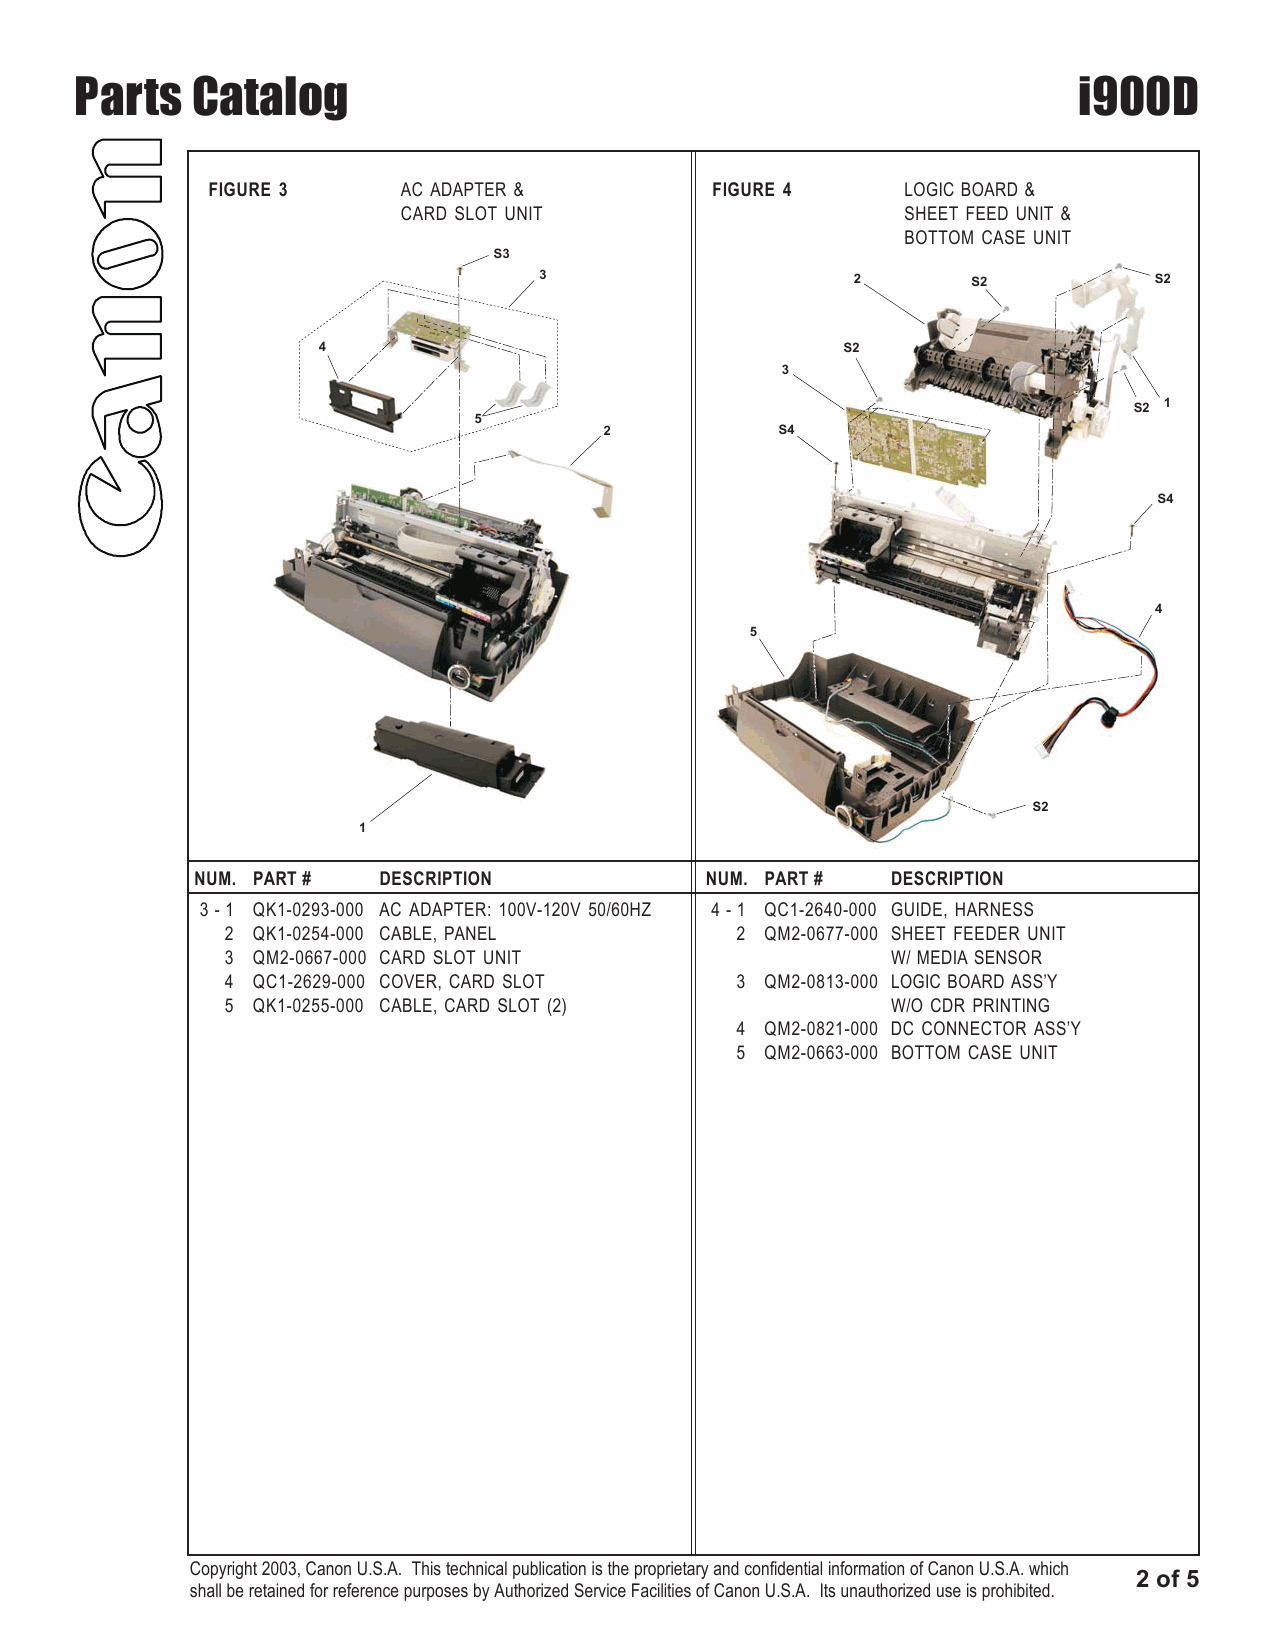 Canon PIXUS i900D Parts Catalog Manual-3